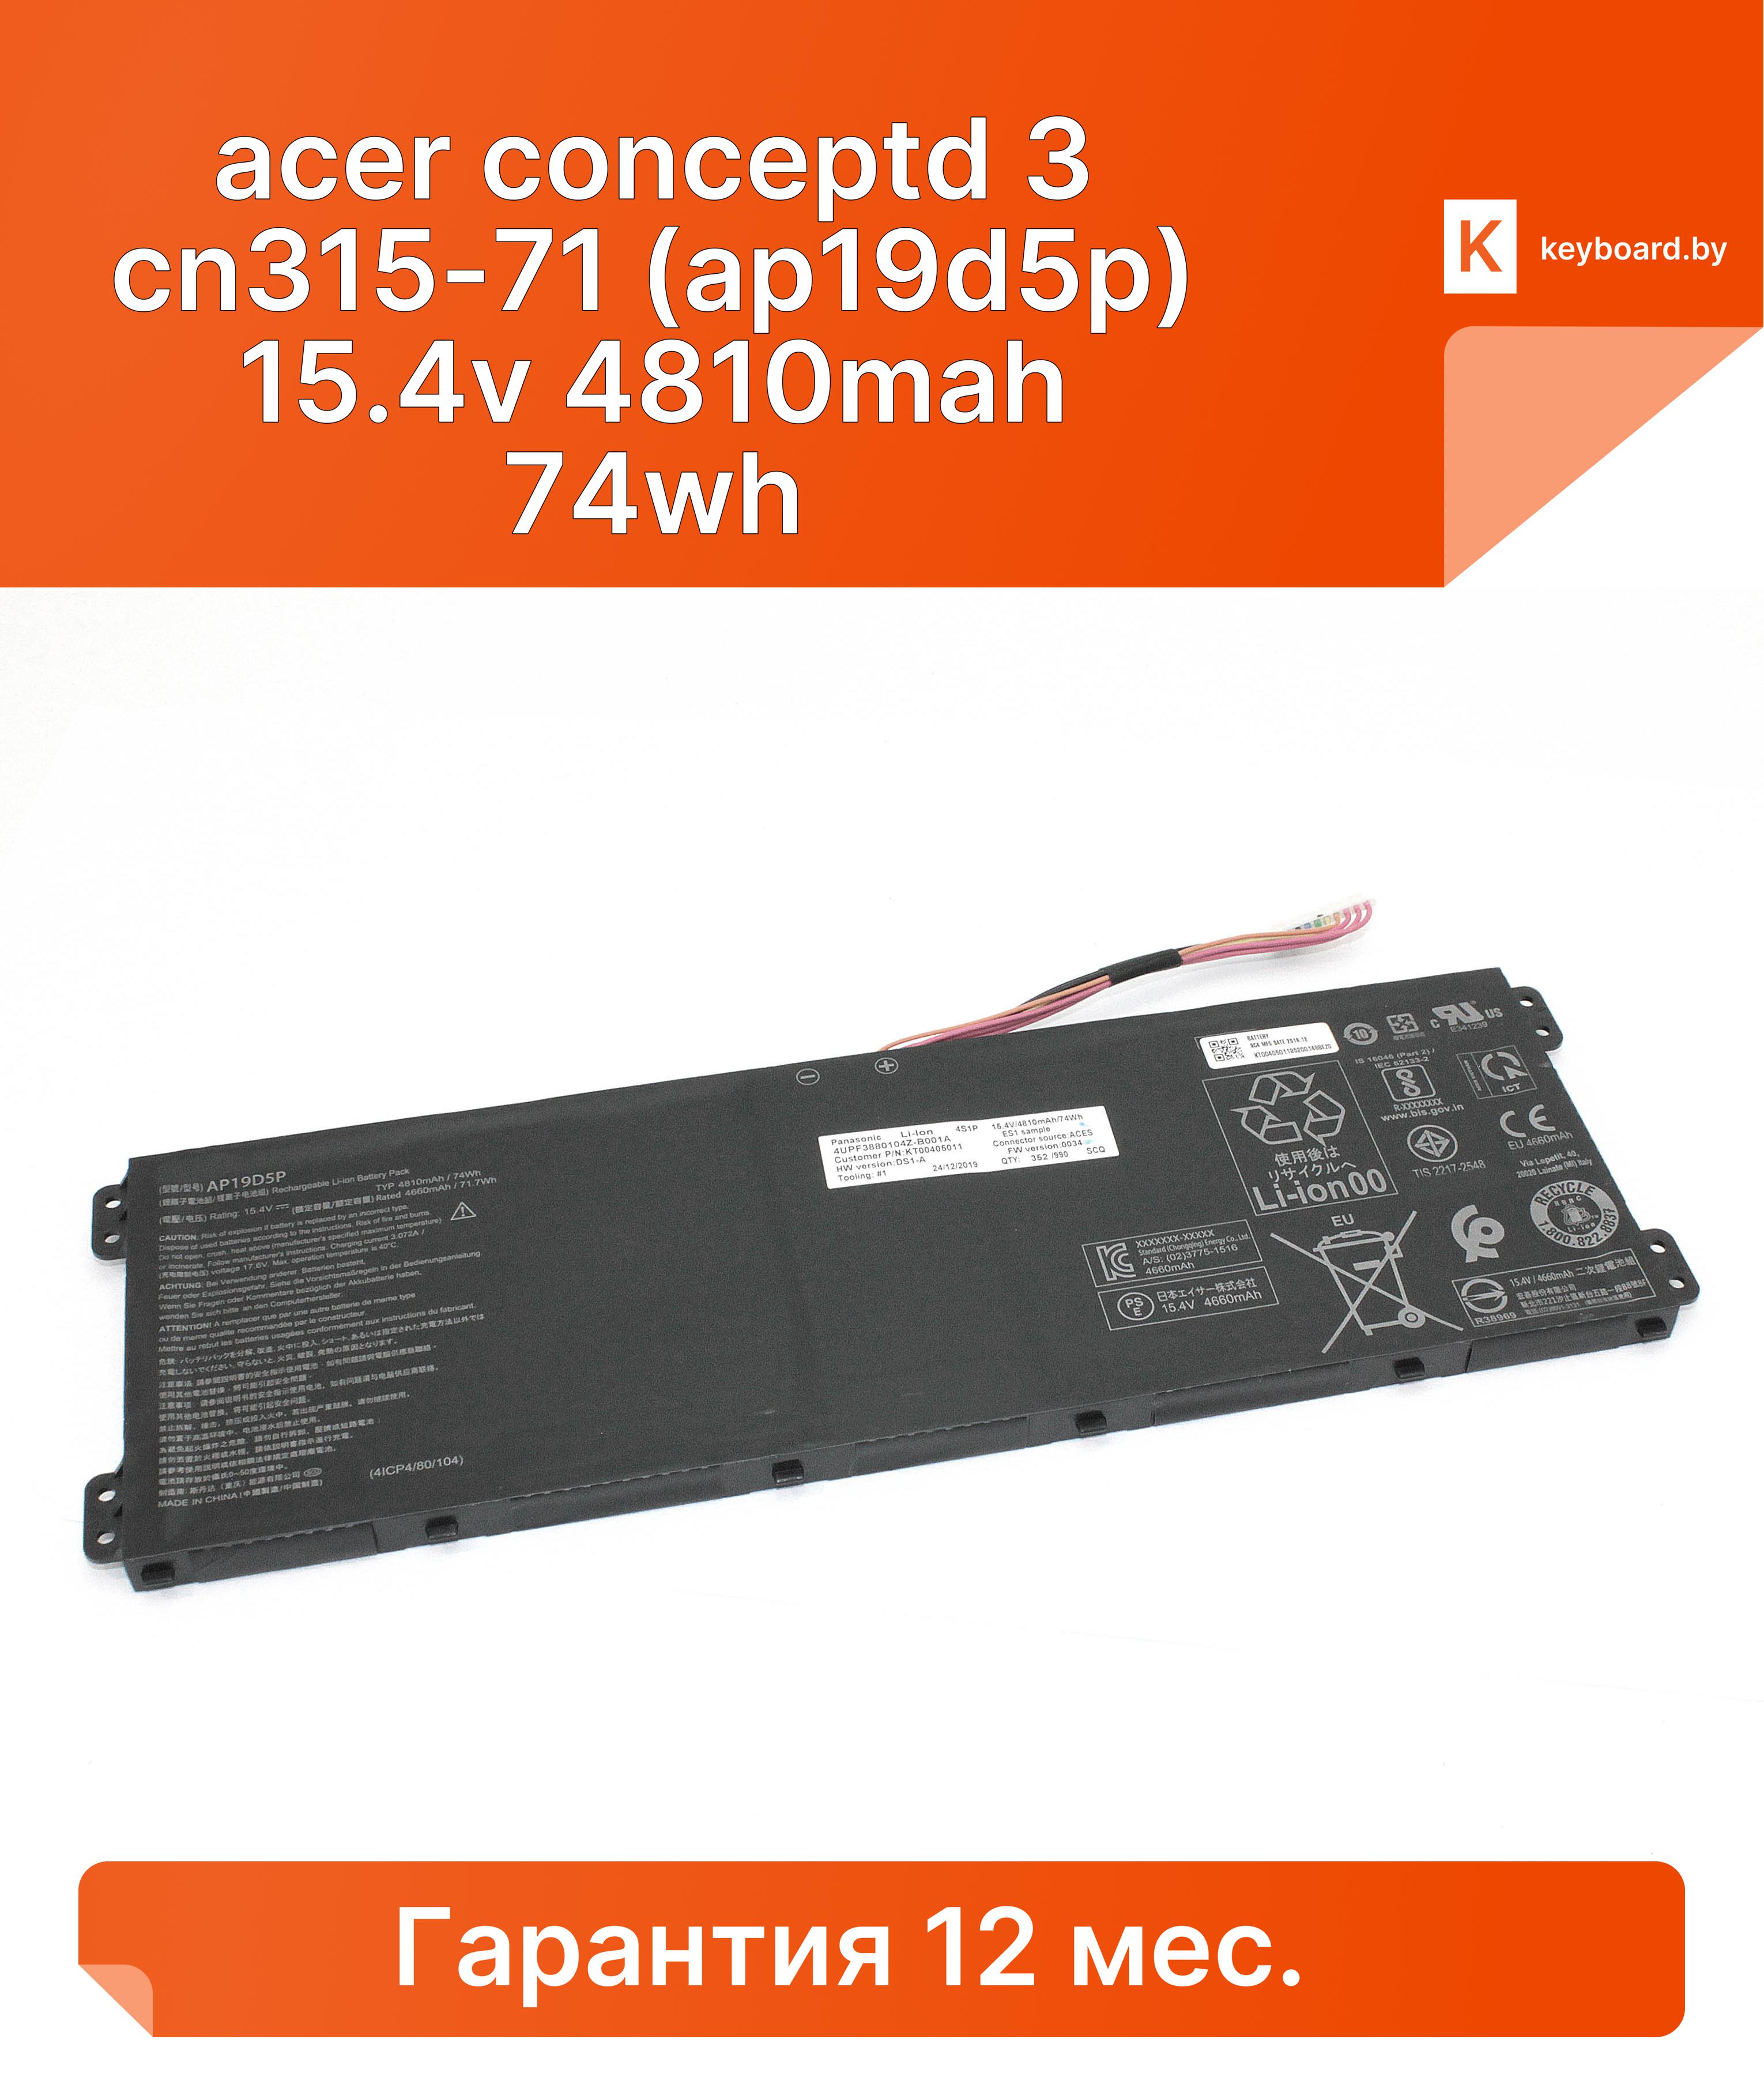 Аккумуляторная батарея для ноутбука acer conceptd 3 cn315-71 (ap19d5p) 15.4v  4810mah 74wh